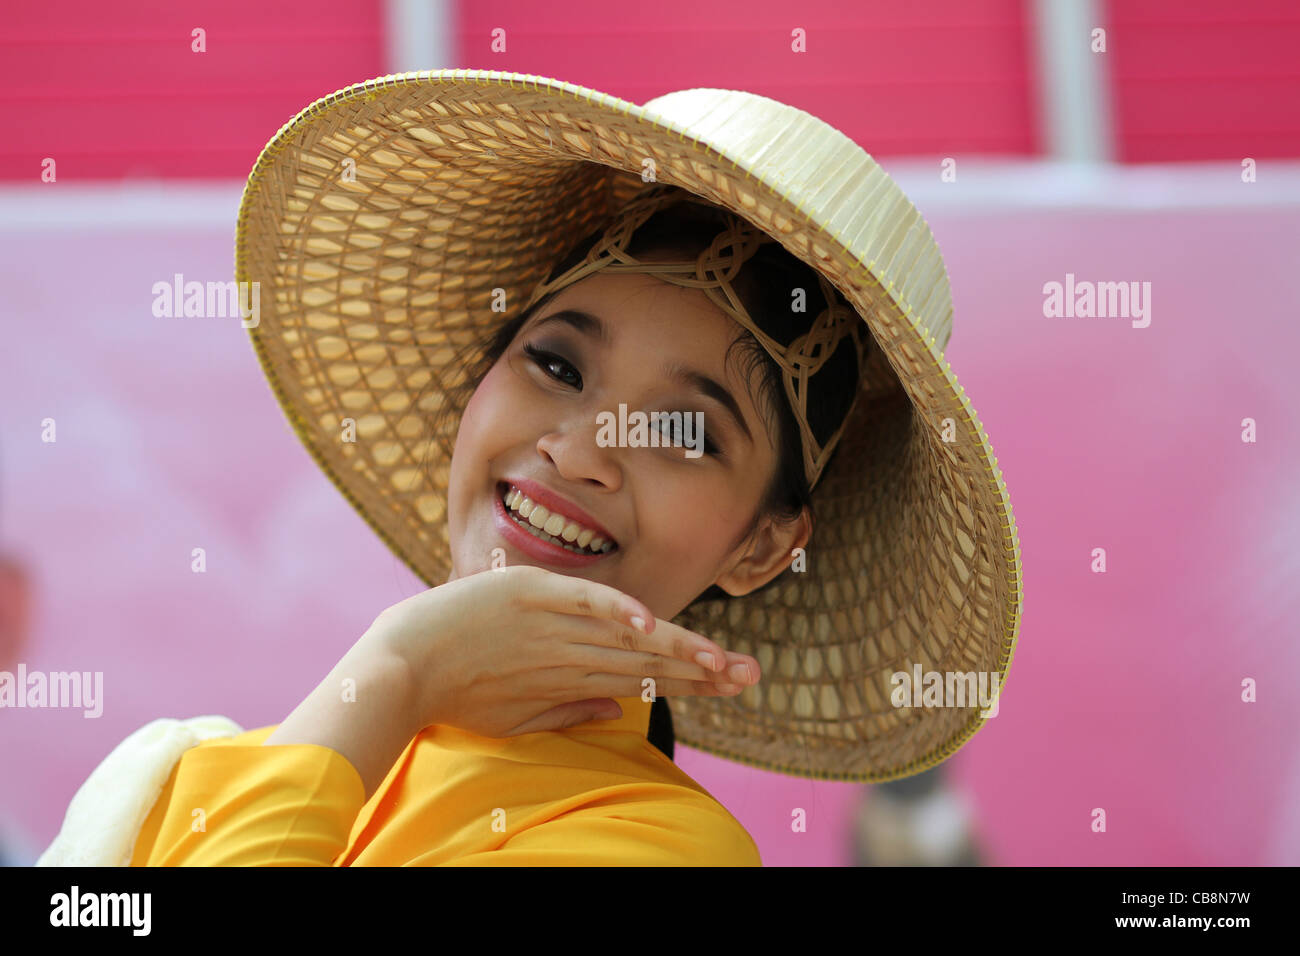 Ein thailändisches Mädchen in Tracht und trägt einen Korb Flechten Hut Gesten mit der Hand unter ihr Kinn, wie sie lächelt. Stockfoto